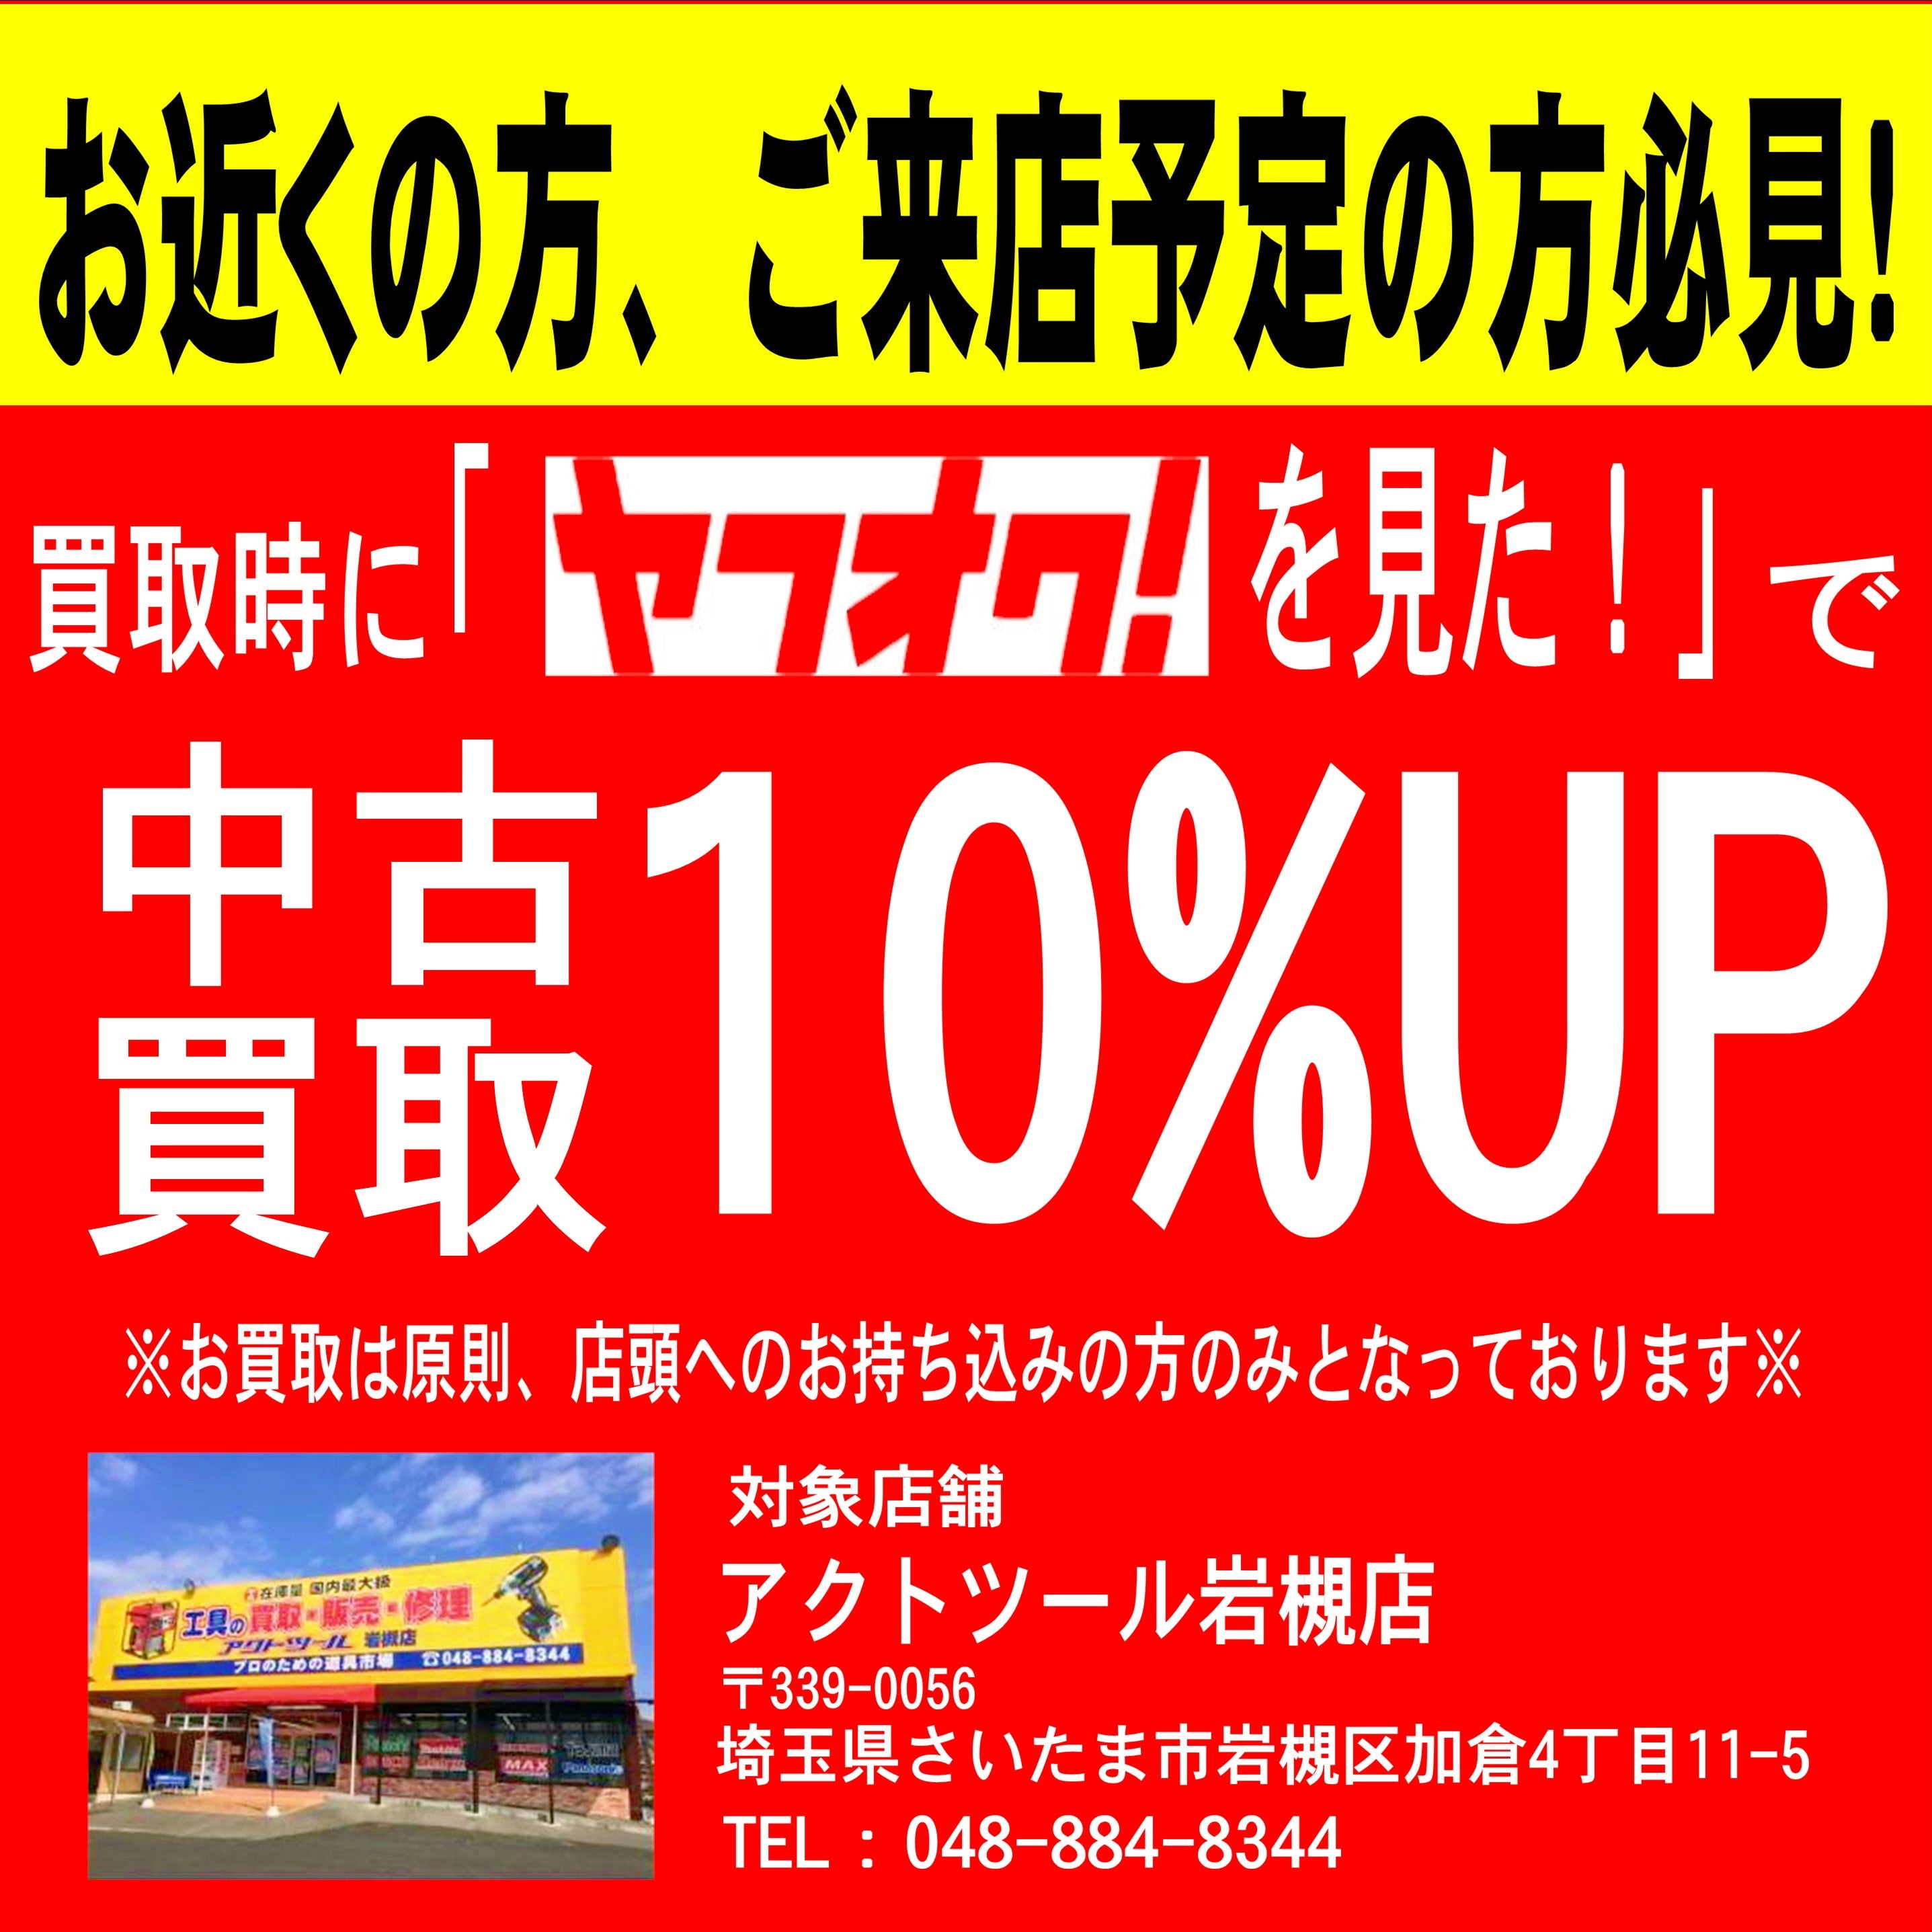 ヨコタ ニードルスケーラー YC-20【岩槻店】 | アクトツールオンライン